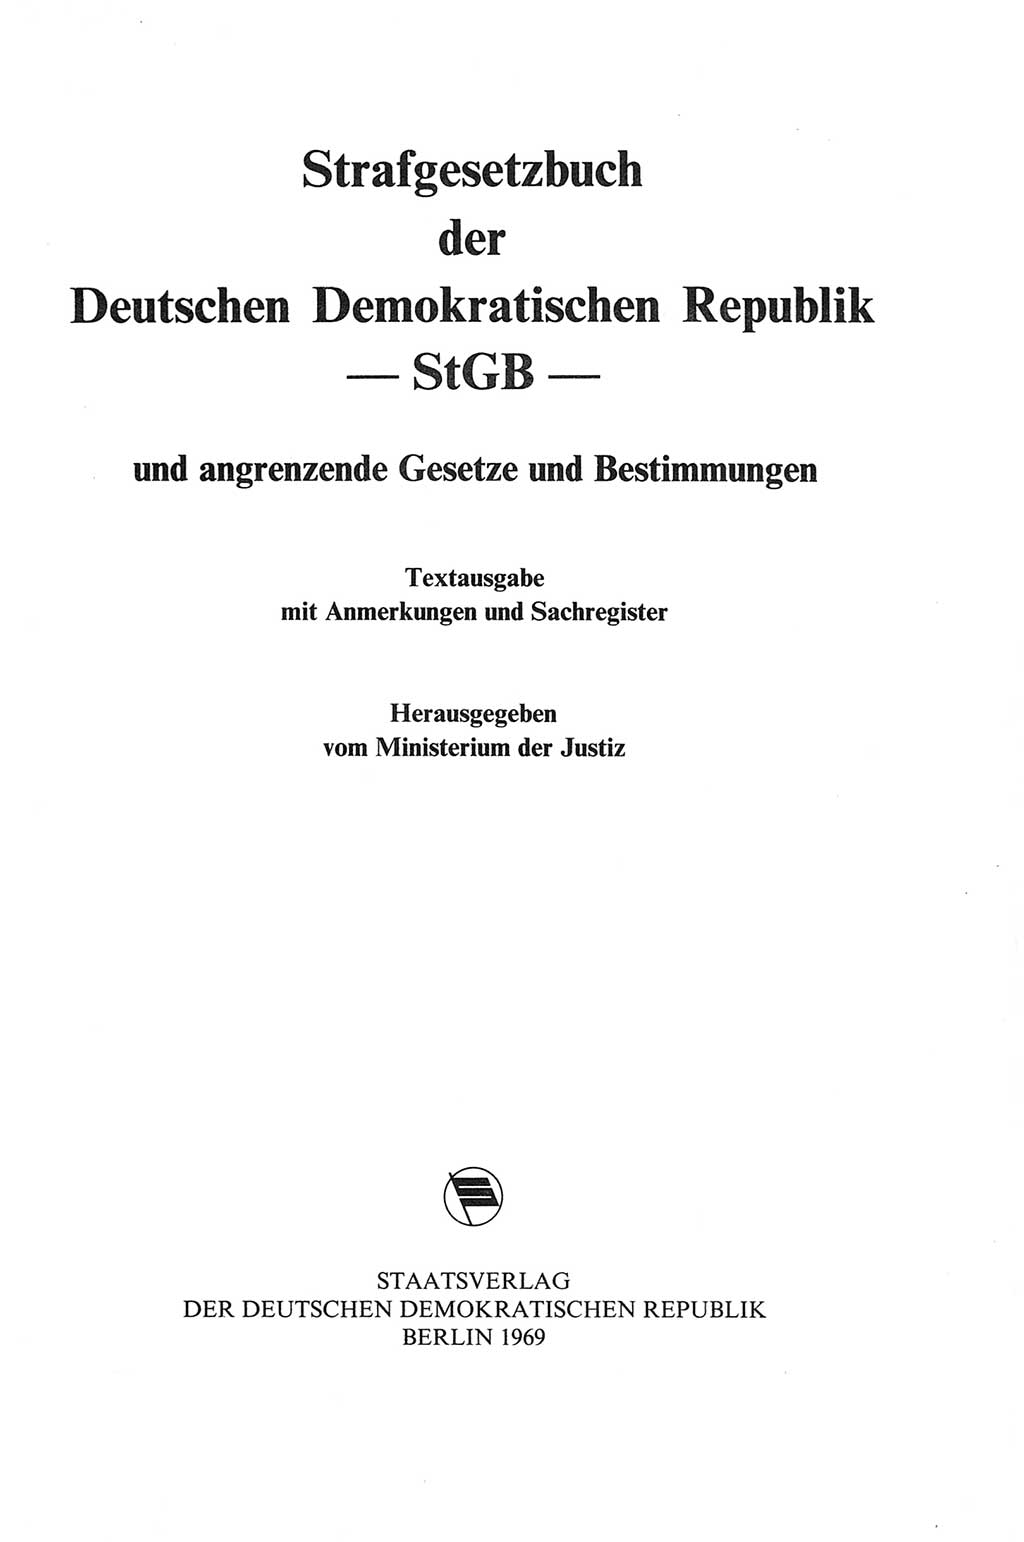 Strafgesetzbuch (StGB) der Deutschen Demokratischen Republik (DDR) und angrenzende Gesetze und Bestimmungen 1968, Seite 3 (StGB Ges. Best. DDR 1968, S. 3)